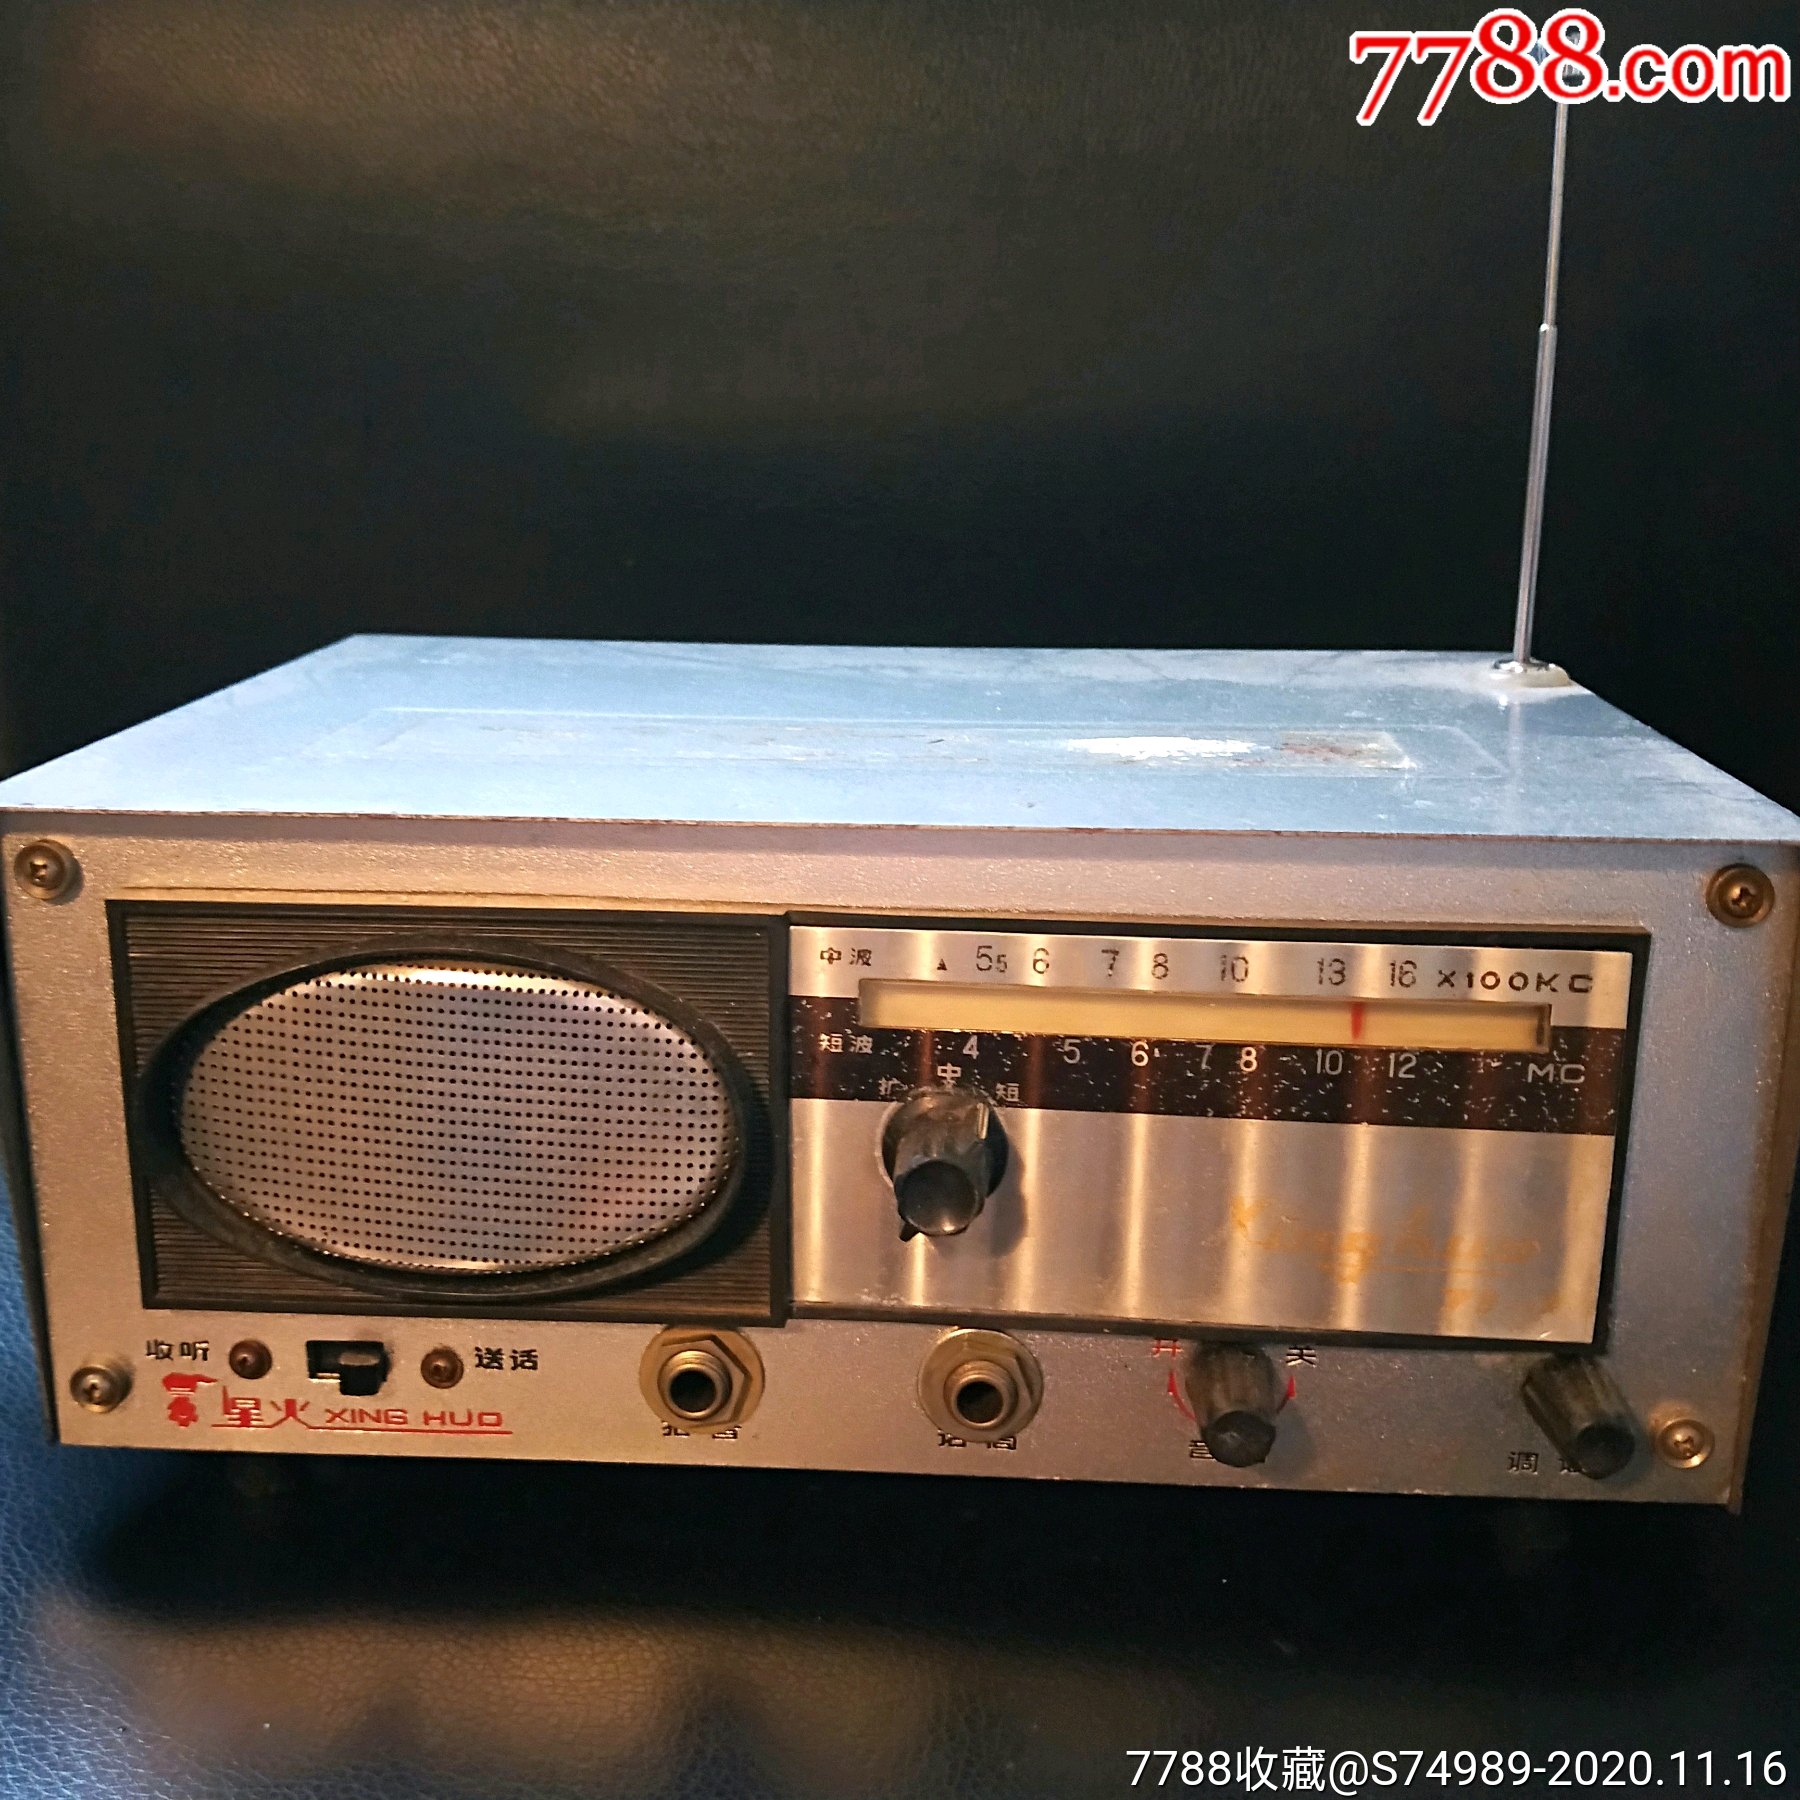 收音机喊话器三用机老电器60年代人上海玩具十四厂制造第晶体管扩音机